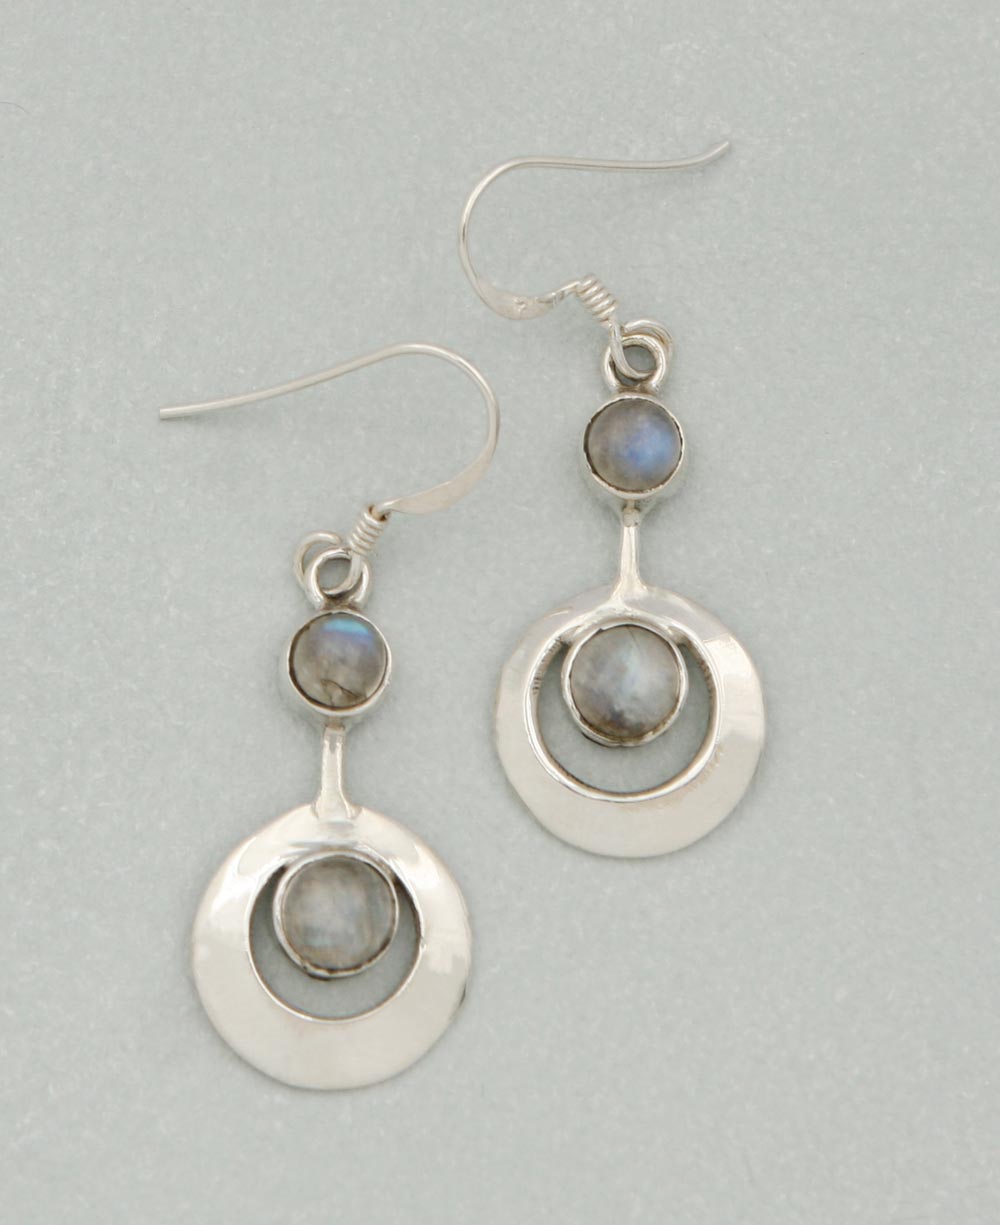 Celestial Labradorite Earrings with Sterling Silver - Earrings